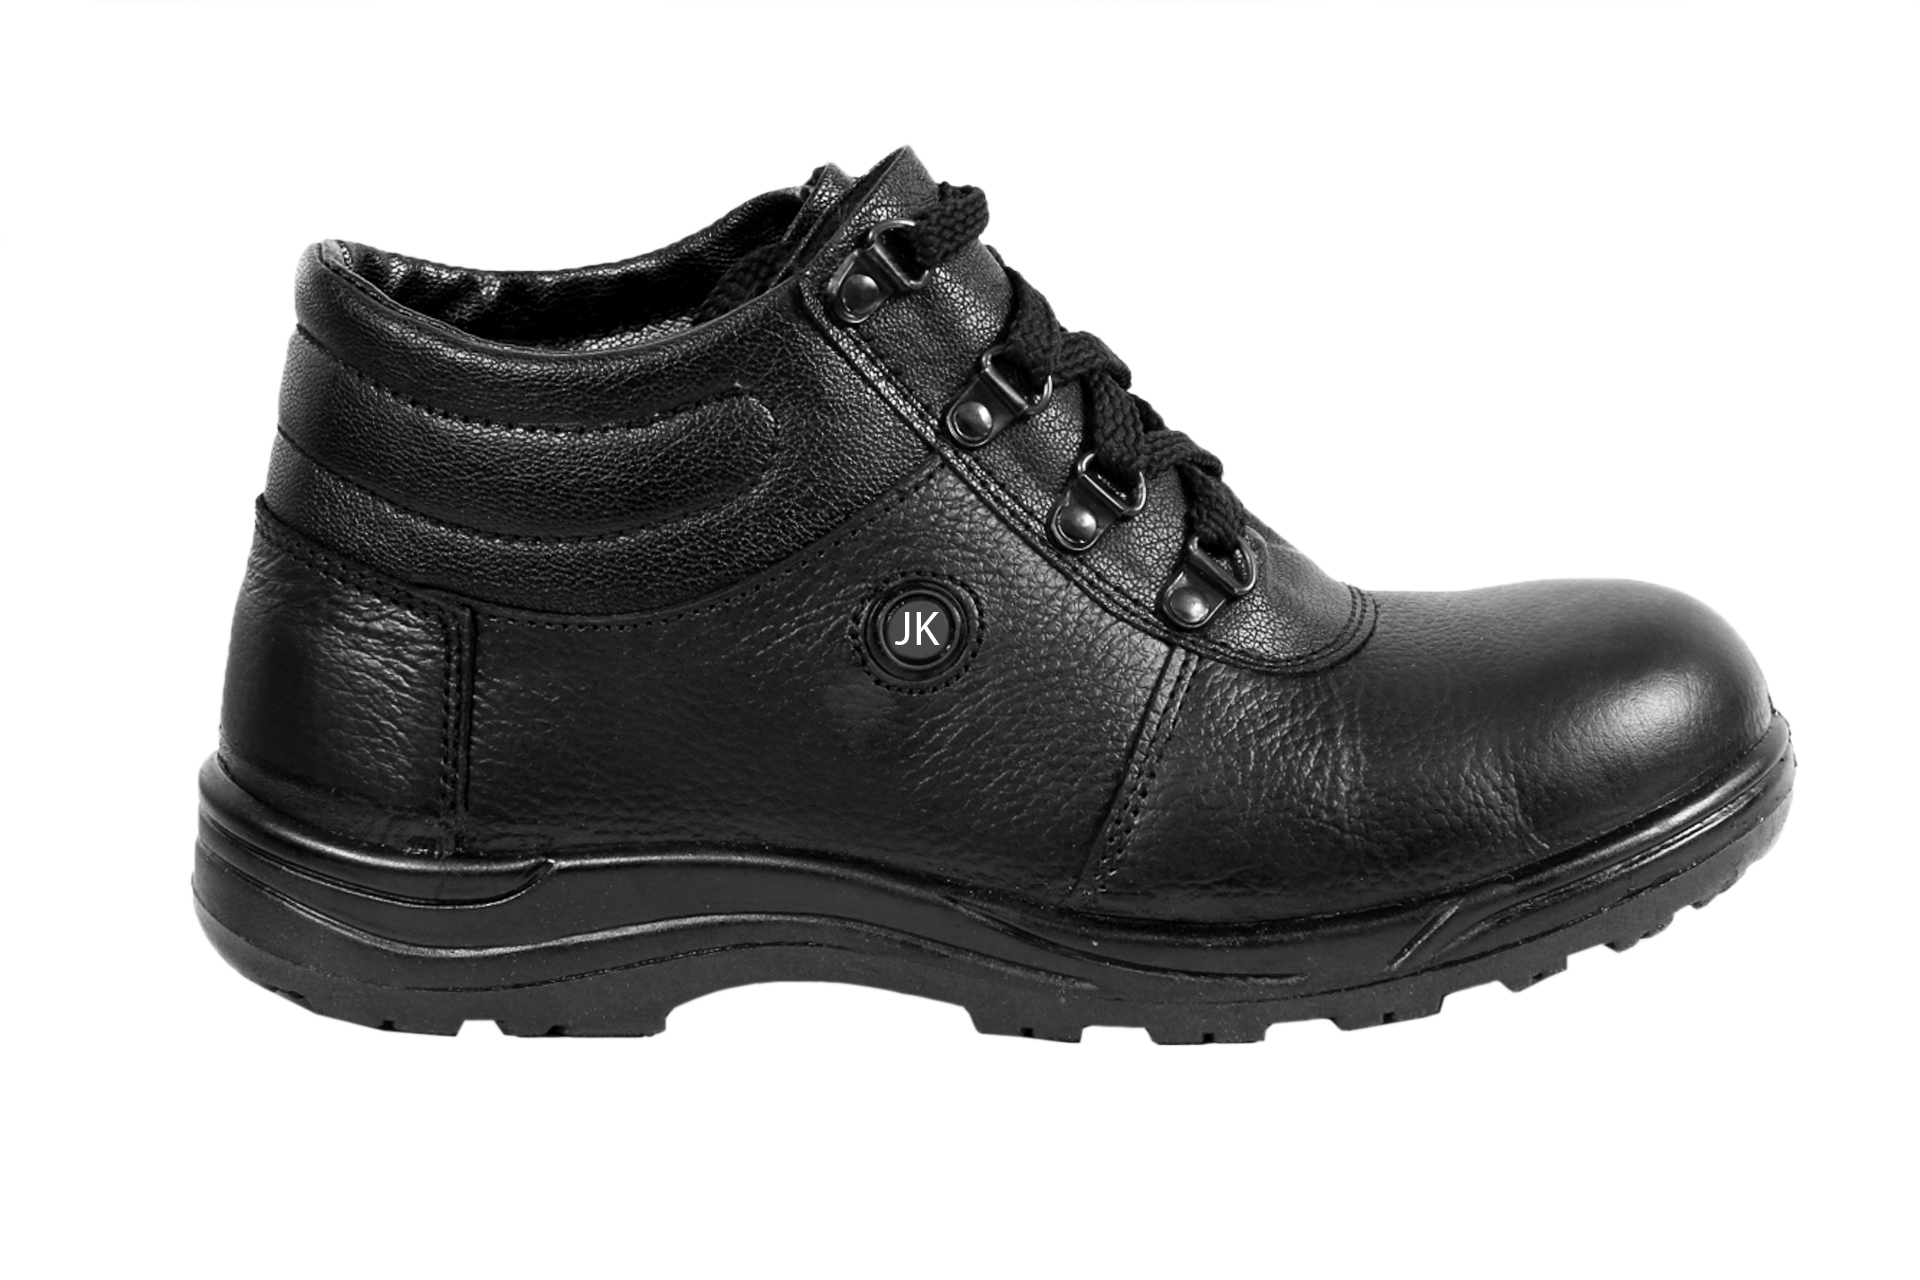 Buy JK Steel Men's Black Genuine Leather Safety Shoes Online @ ₹779 ...